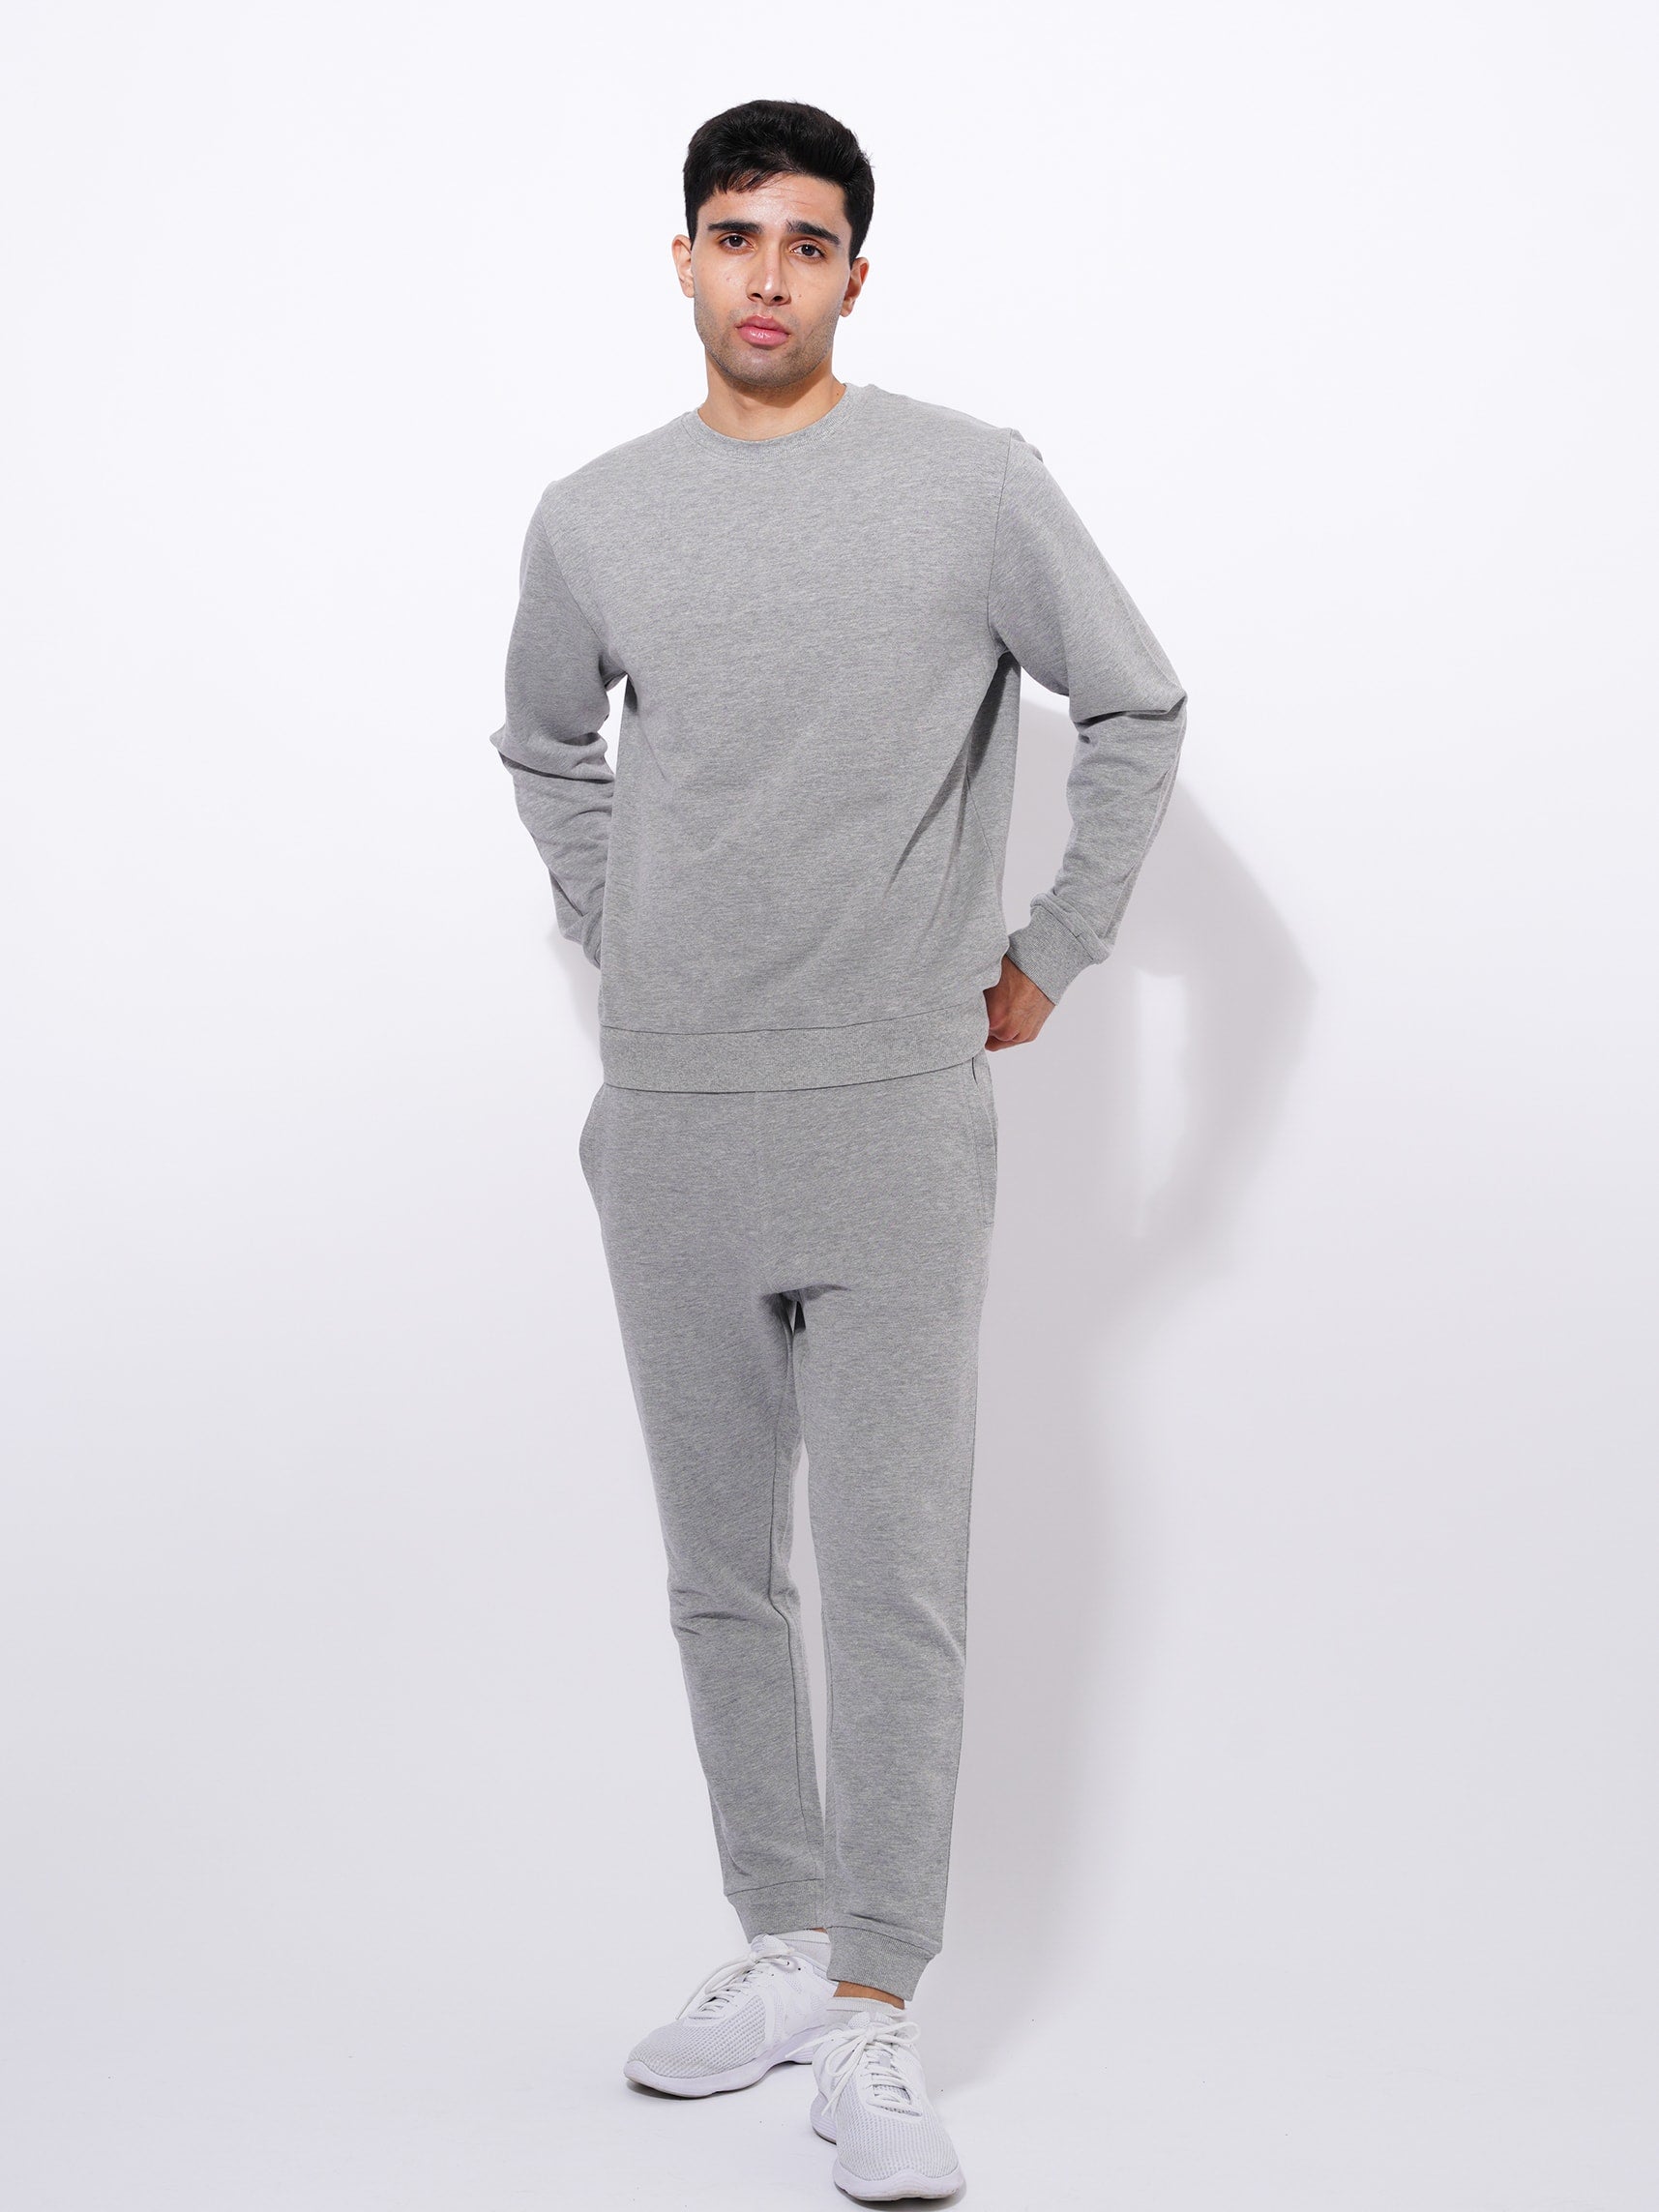 Men's Cotton Sweatshirts in Grey Mélange Color - inteblu